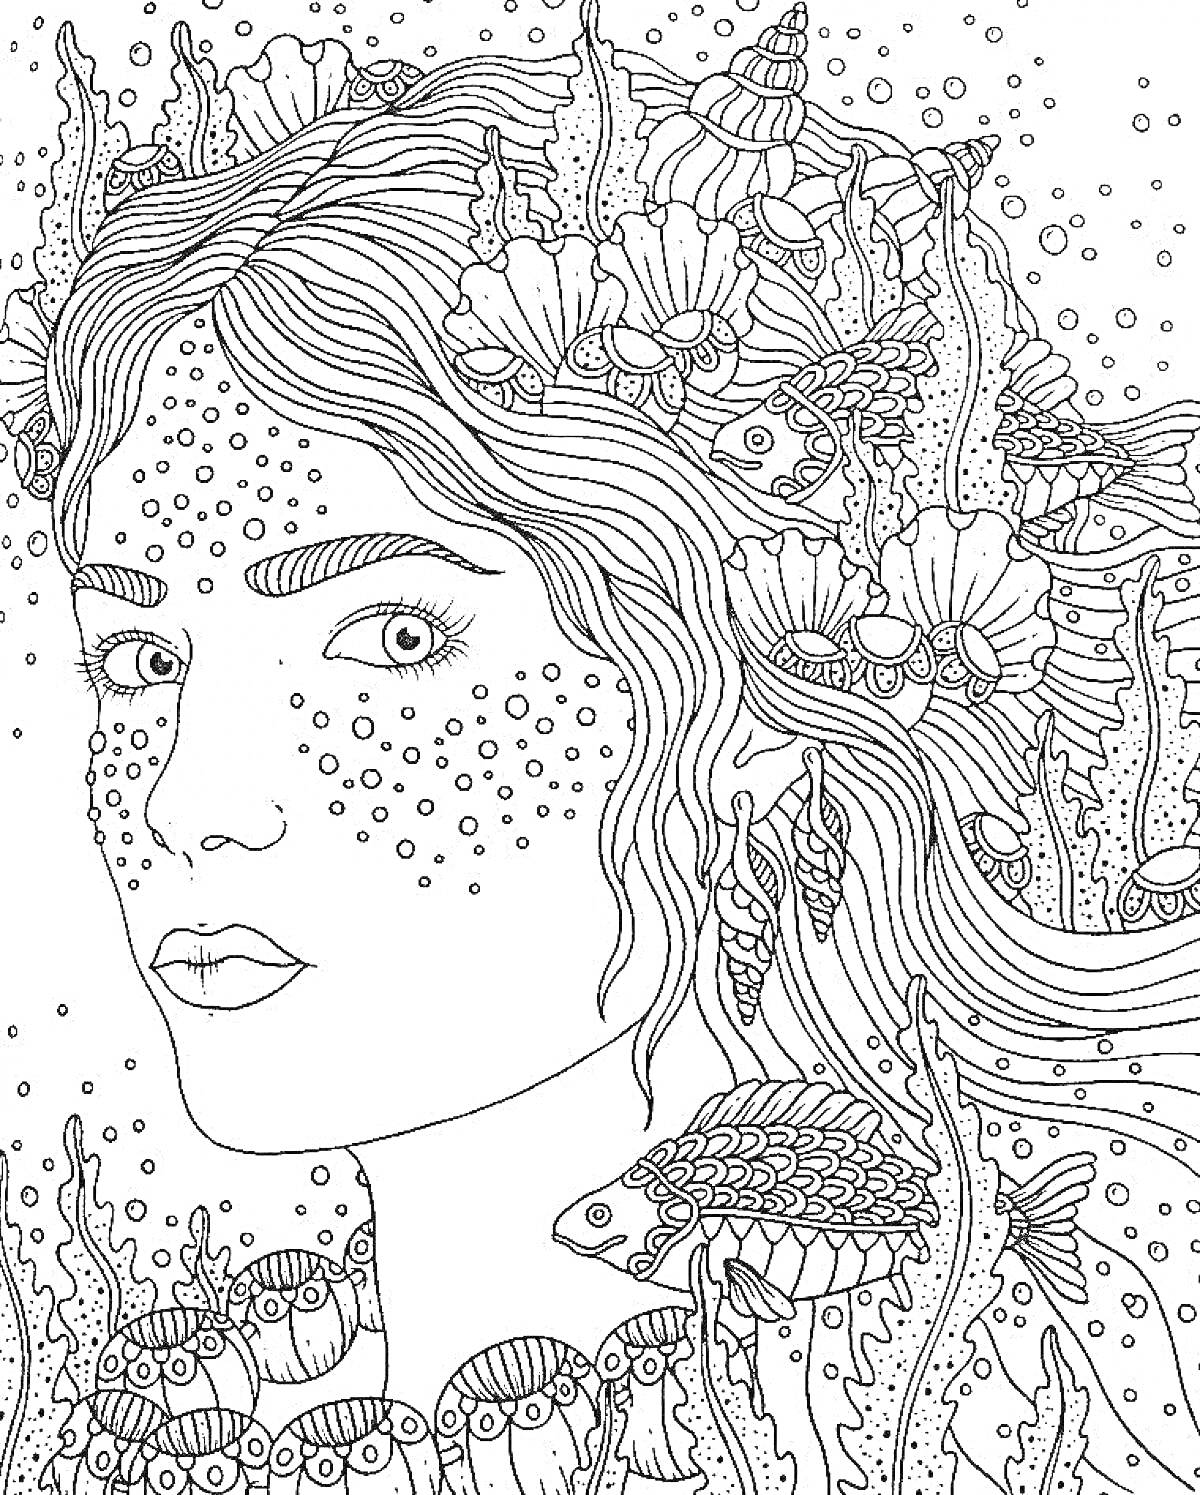 Раскраска лицо женщины с веснушками, рыбы и морские растения